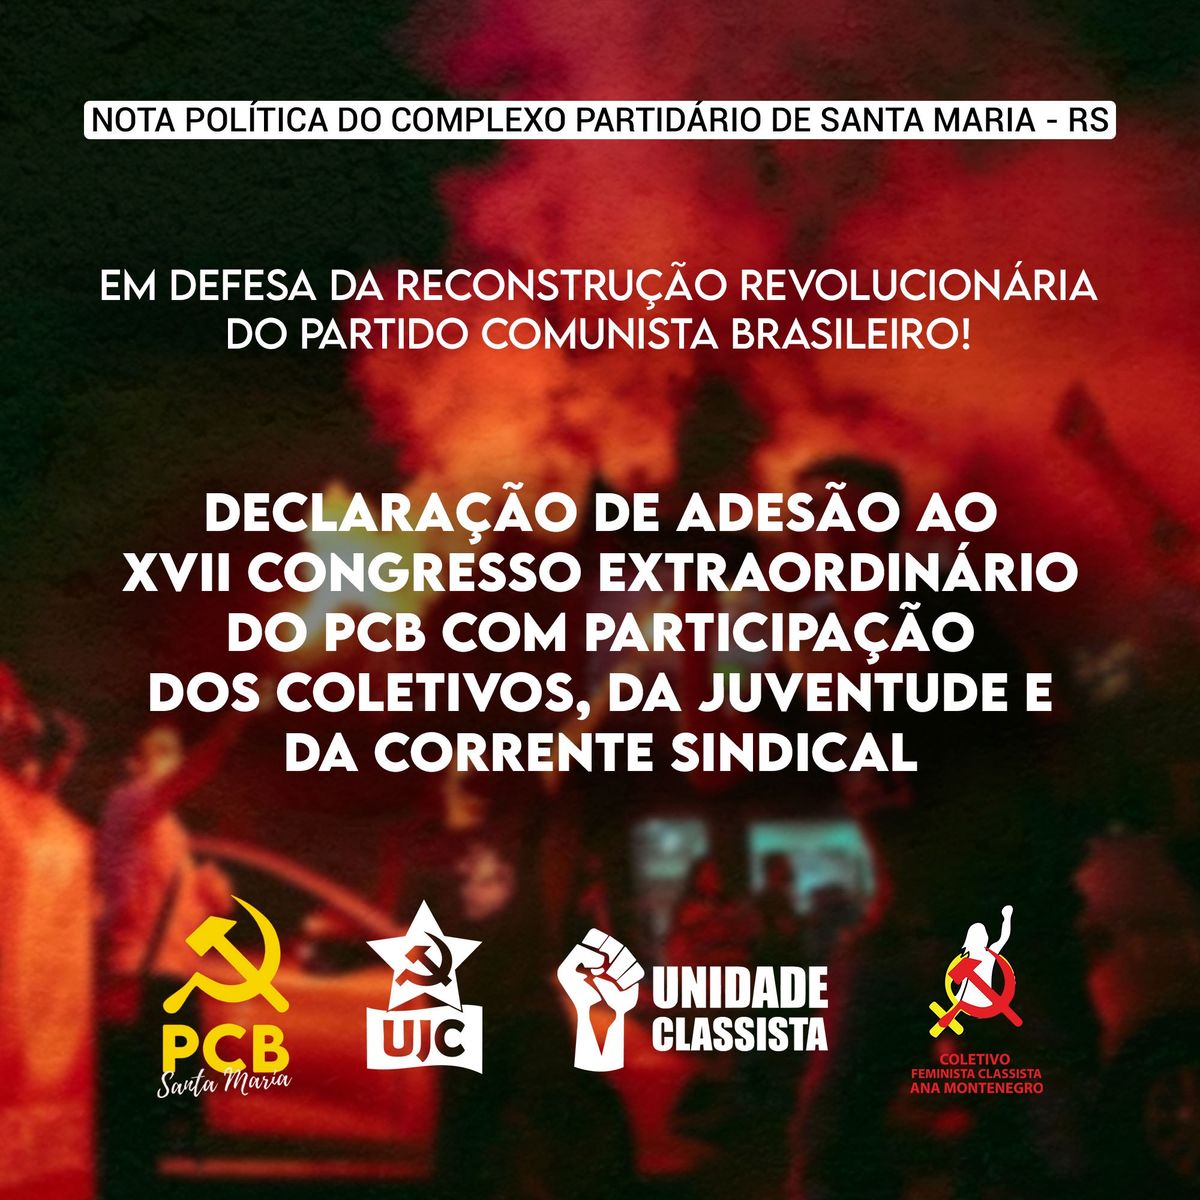 PCB Santa Maria: Declaração de adesão ao XVII Congresso Extraordinário